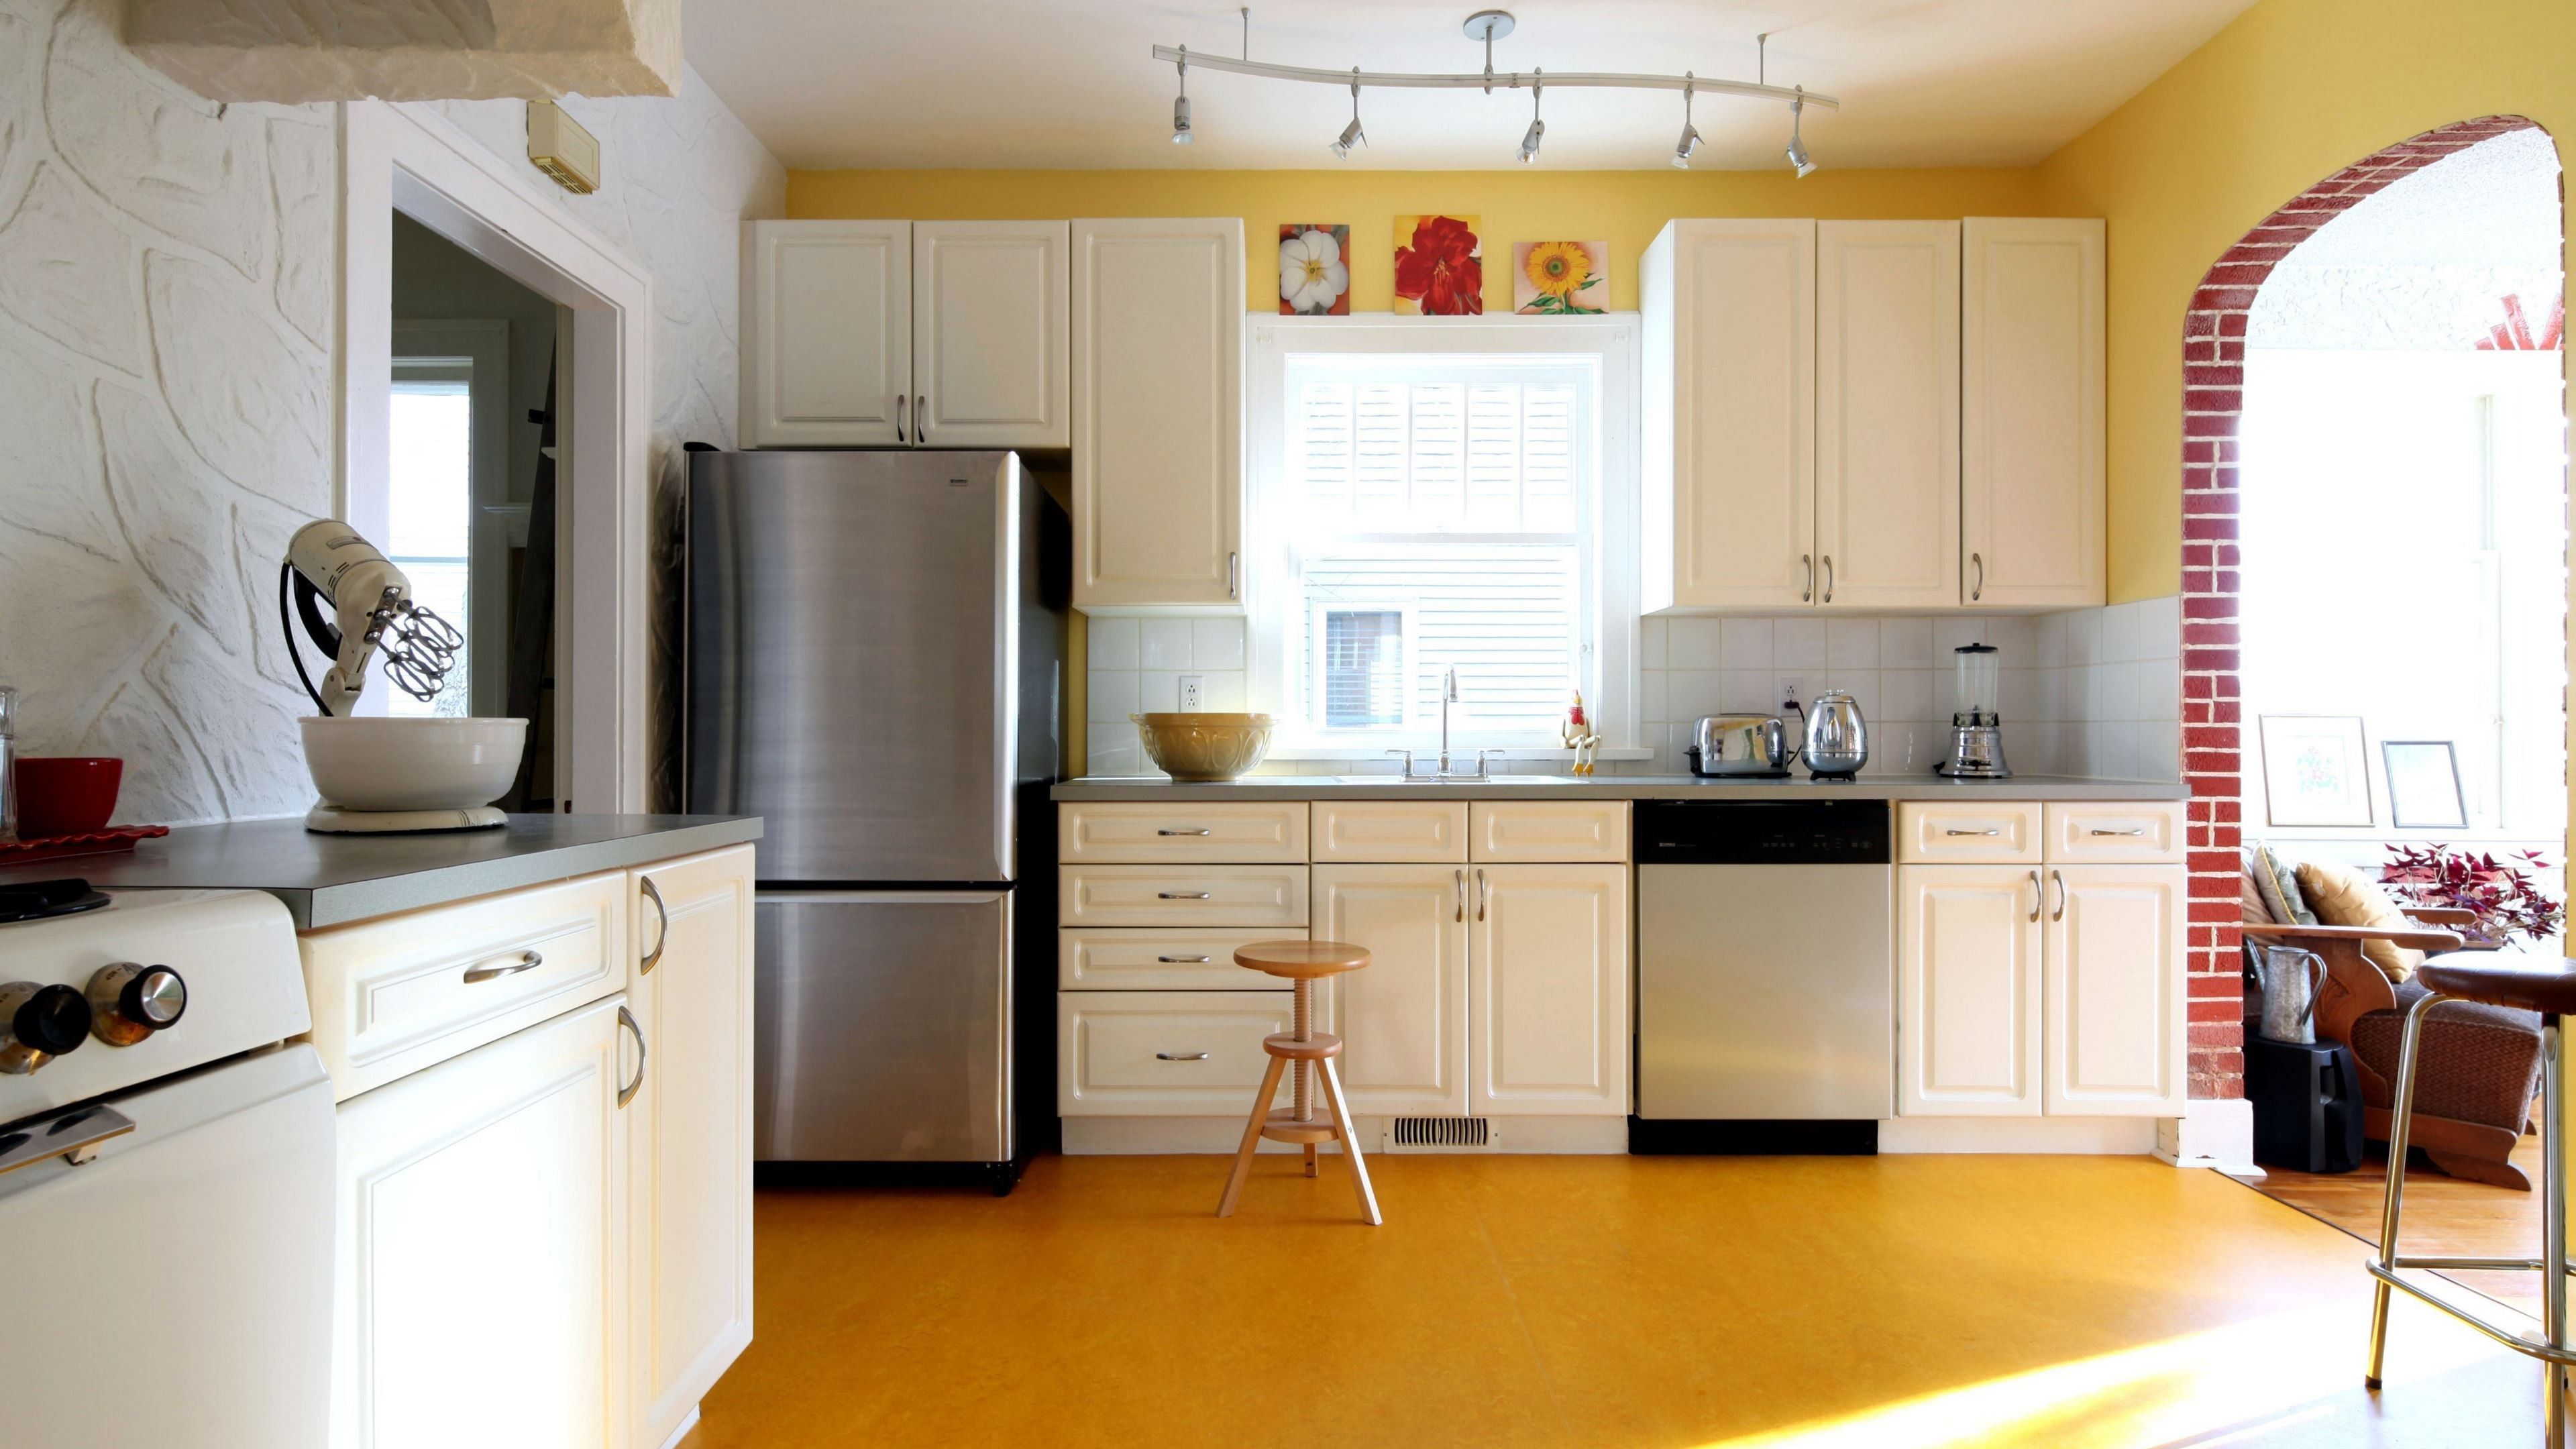 papel tapiz de cocina amarillo,encimera,mueble,gabinetes,habitación,cocina